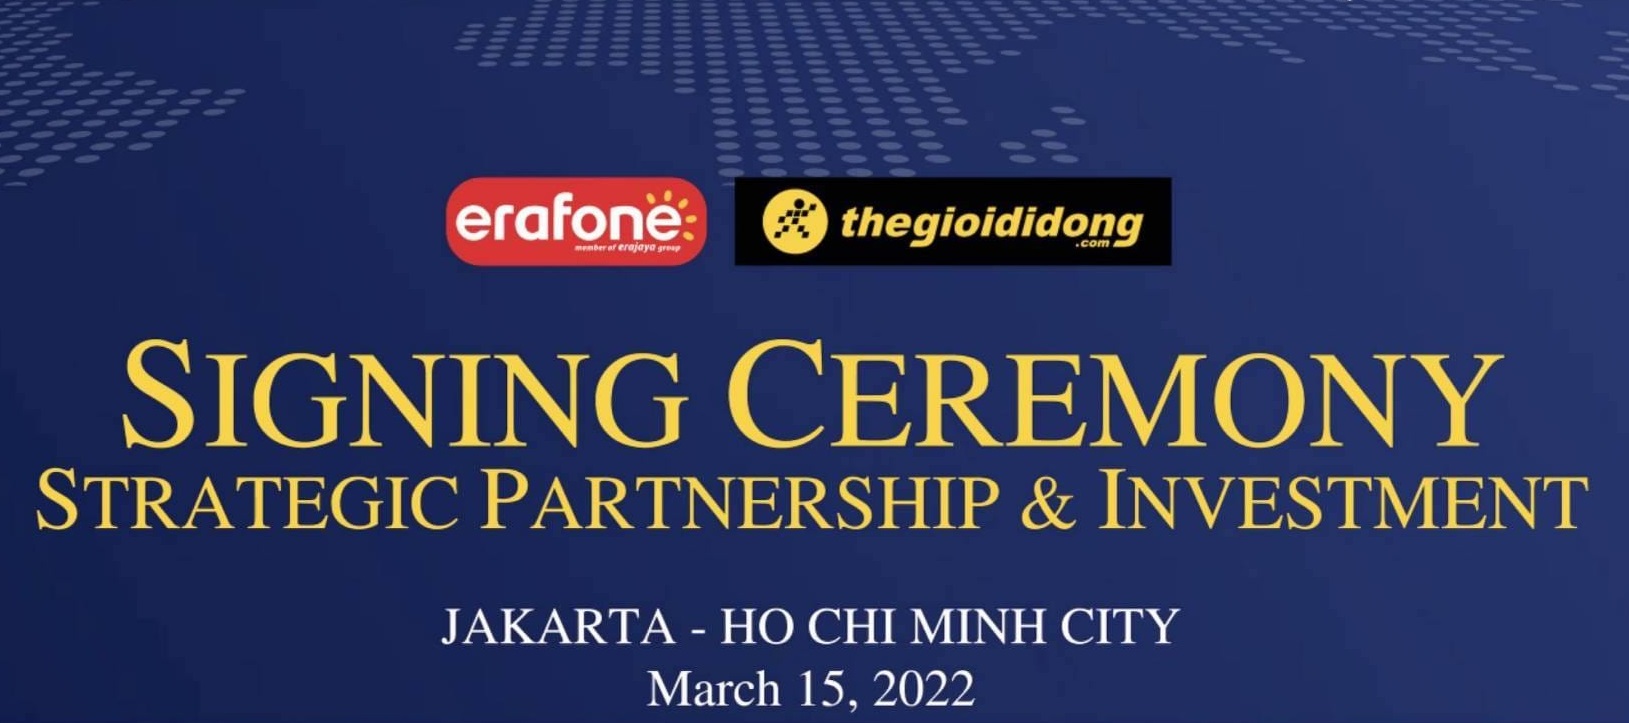 Thế Giới Di Động công bố thành lập liên doanh với Erafone – nhà bán lẻ công nghệ hàng đầu Indonesia